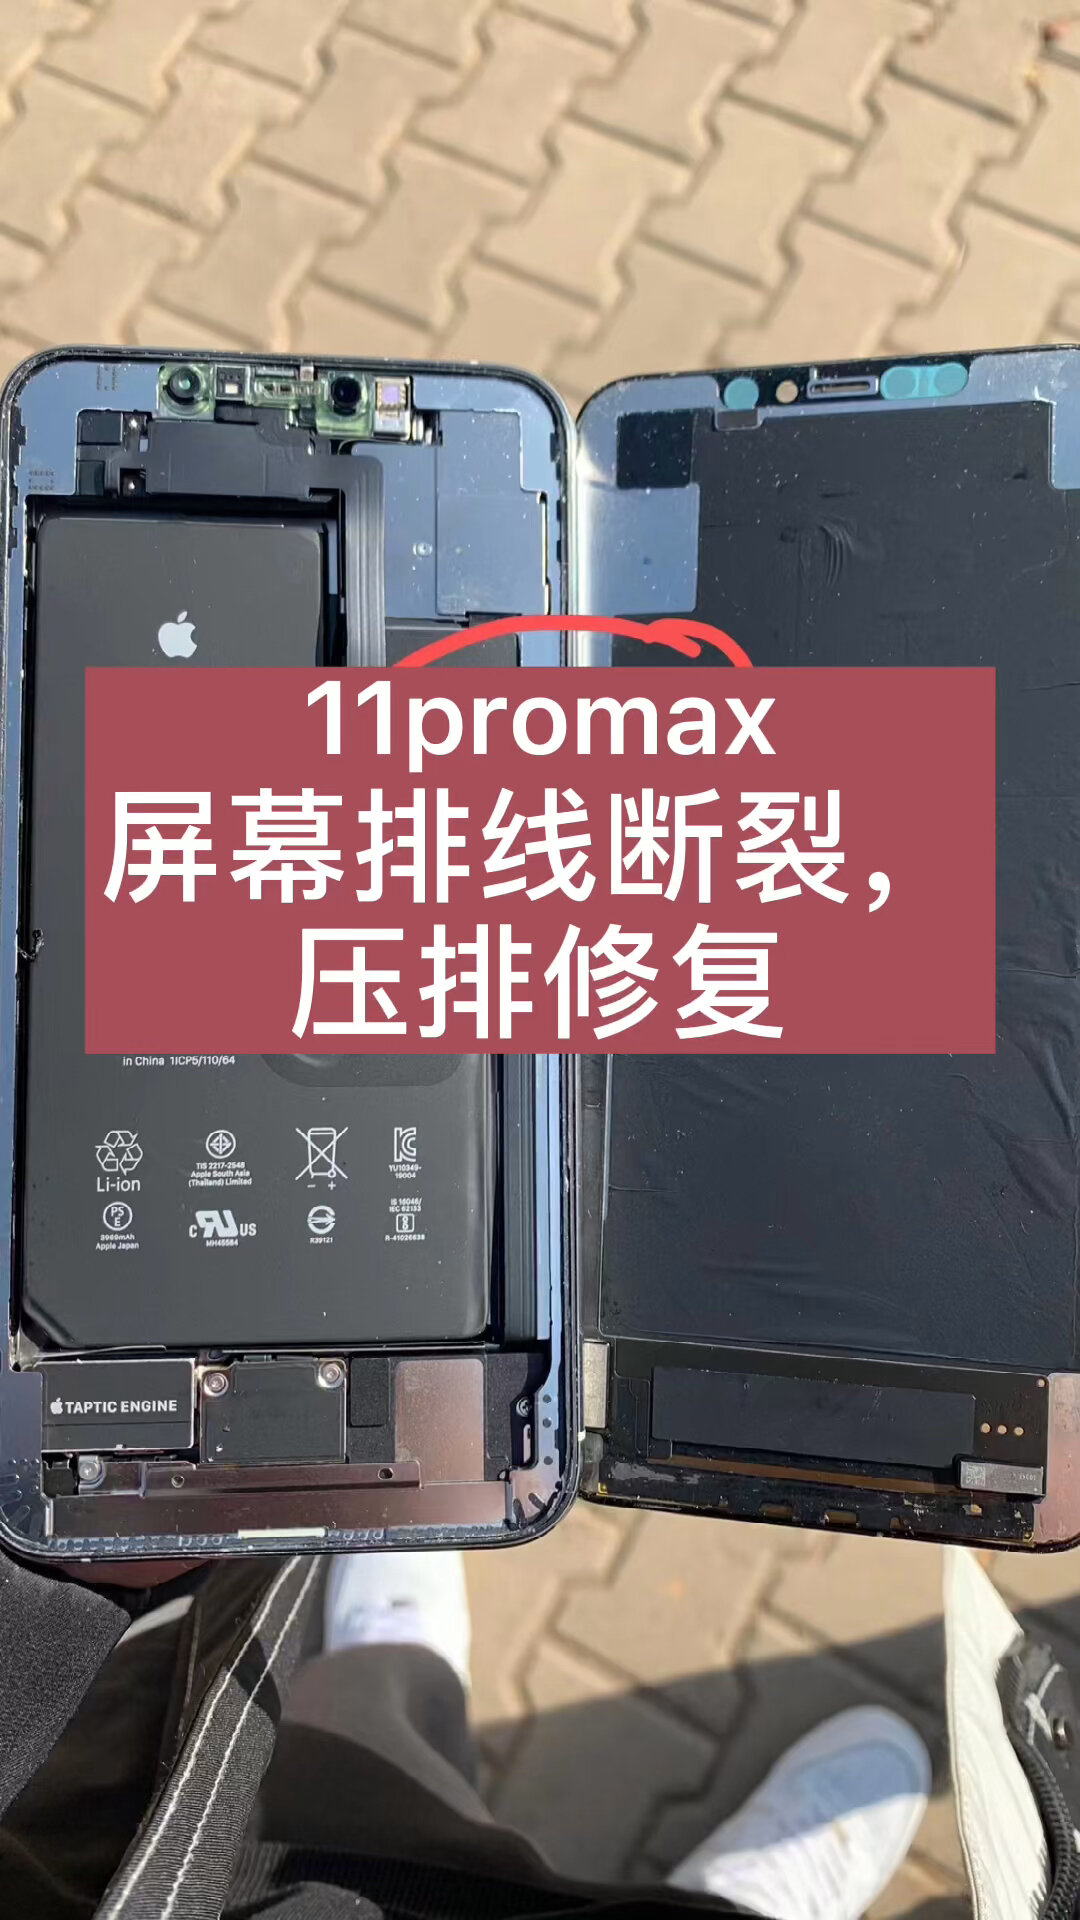 苹果11promax手机屏幕排线断裂压排修复维修